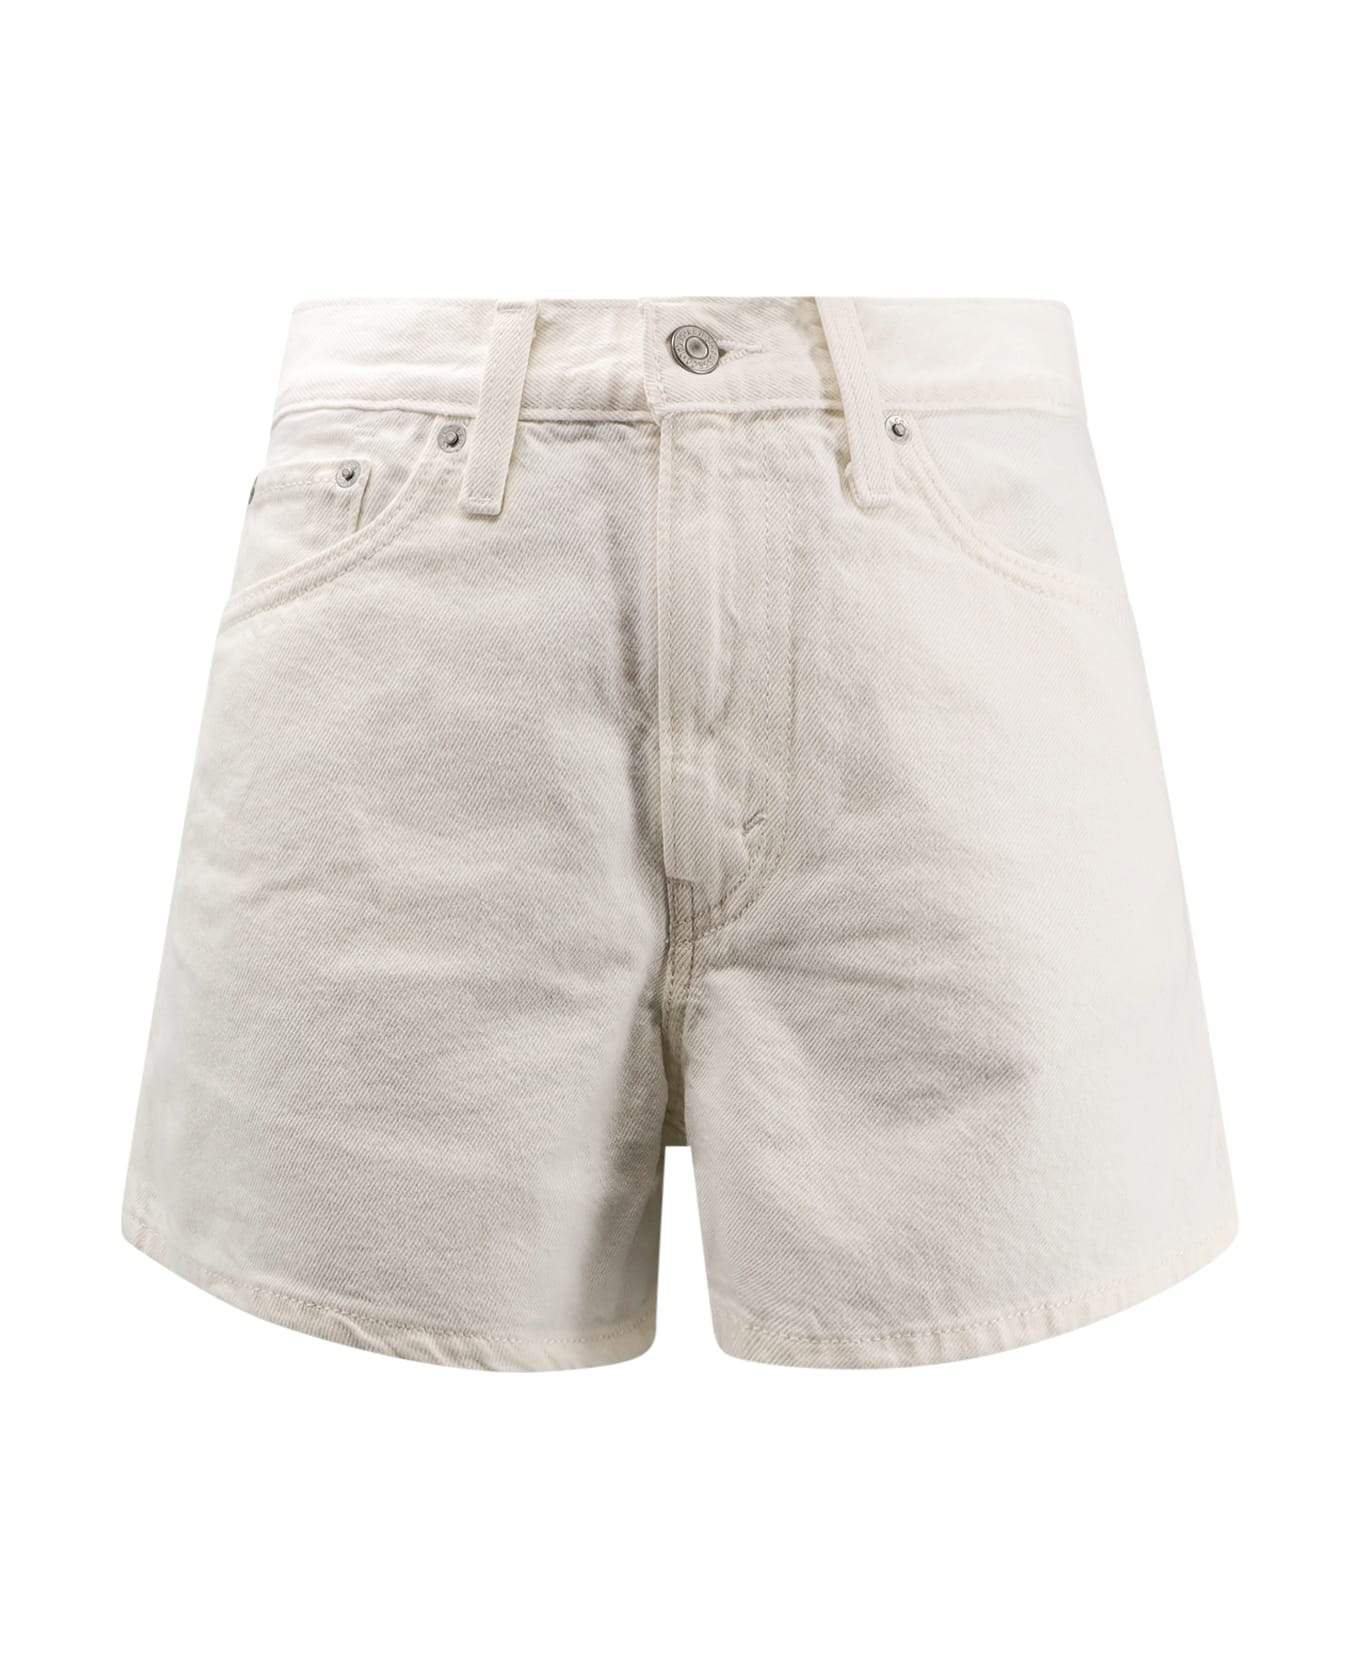 Levi's 80s Mom Shorts - White ショートパンツ